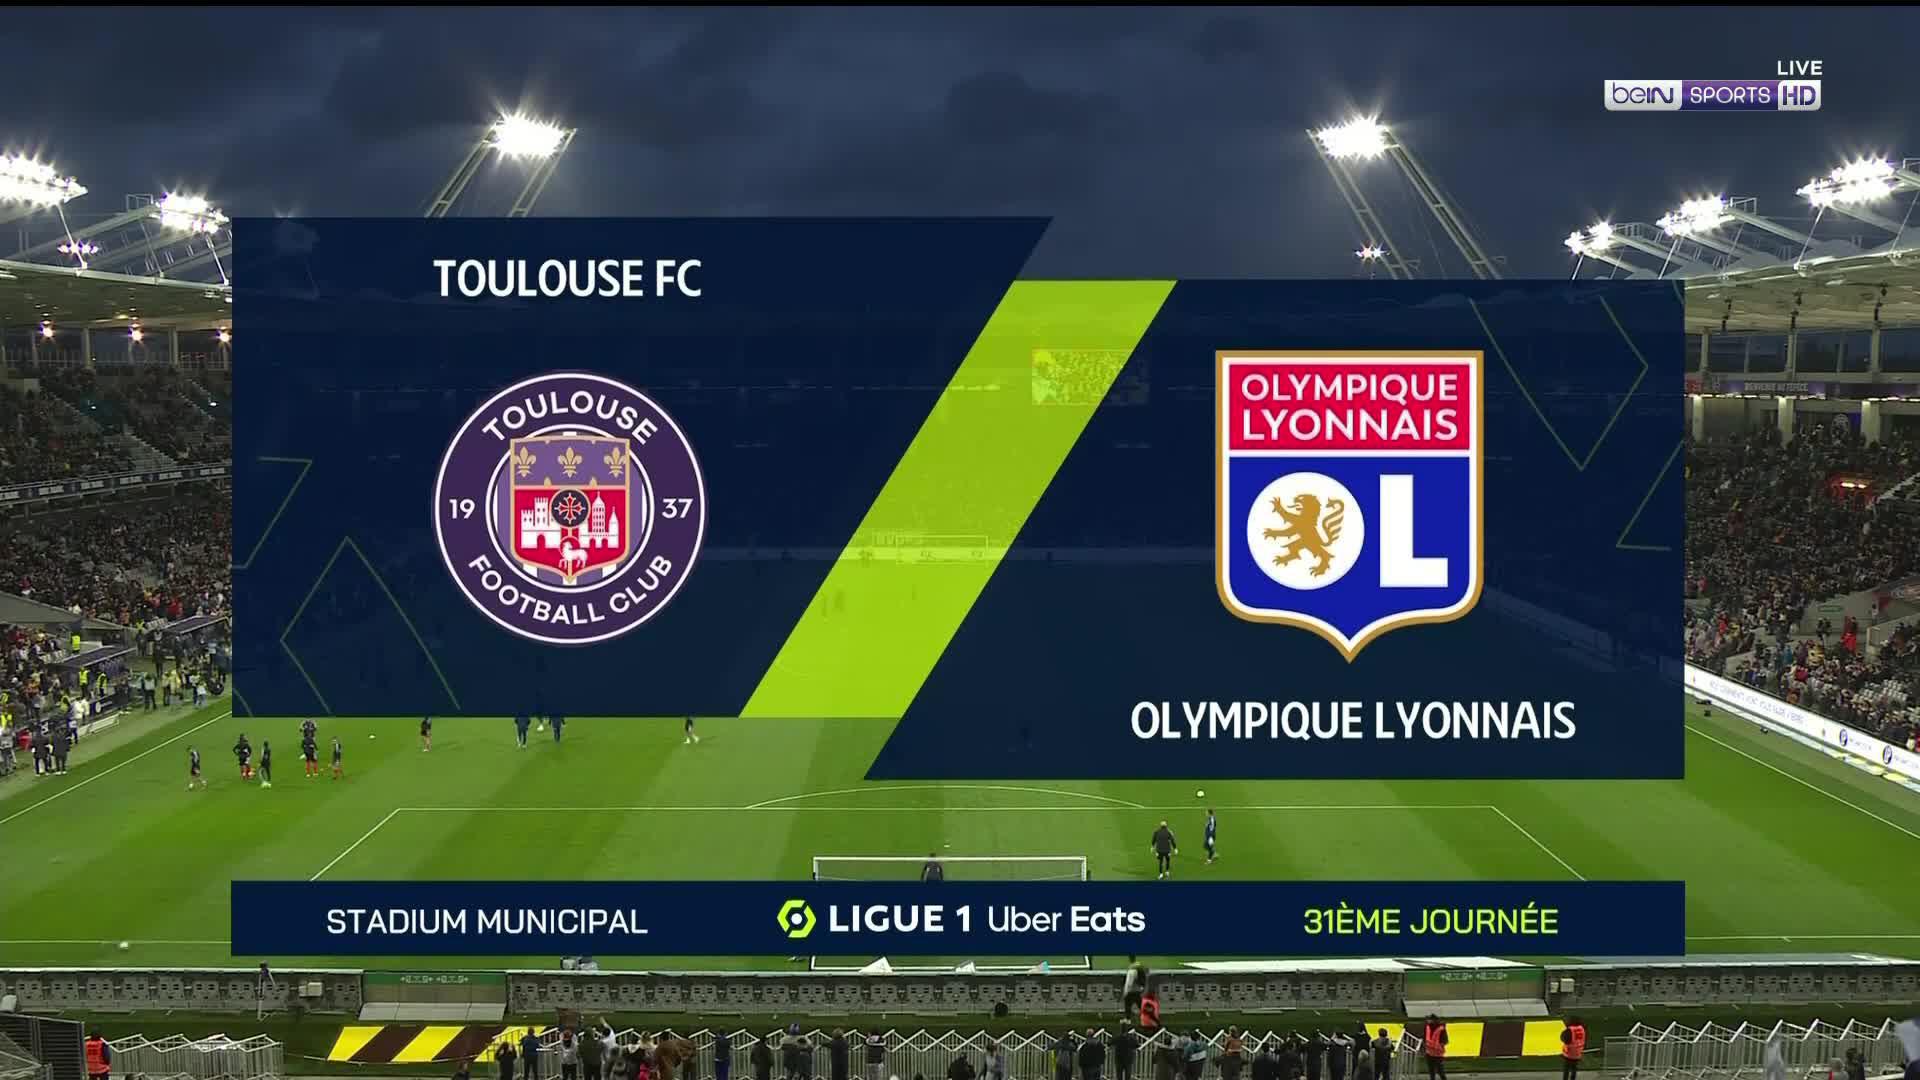 HL - Ligue 1 - Toulouse 1-2 Lyon